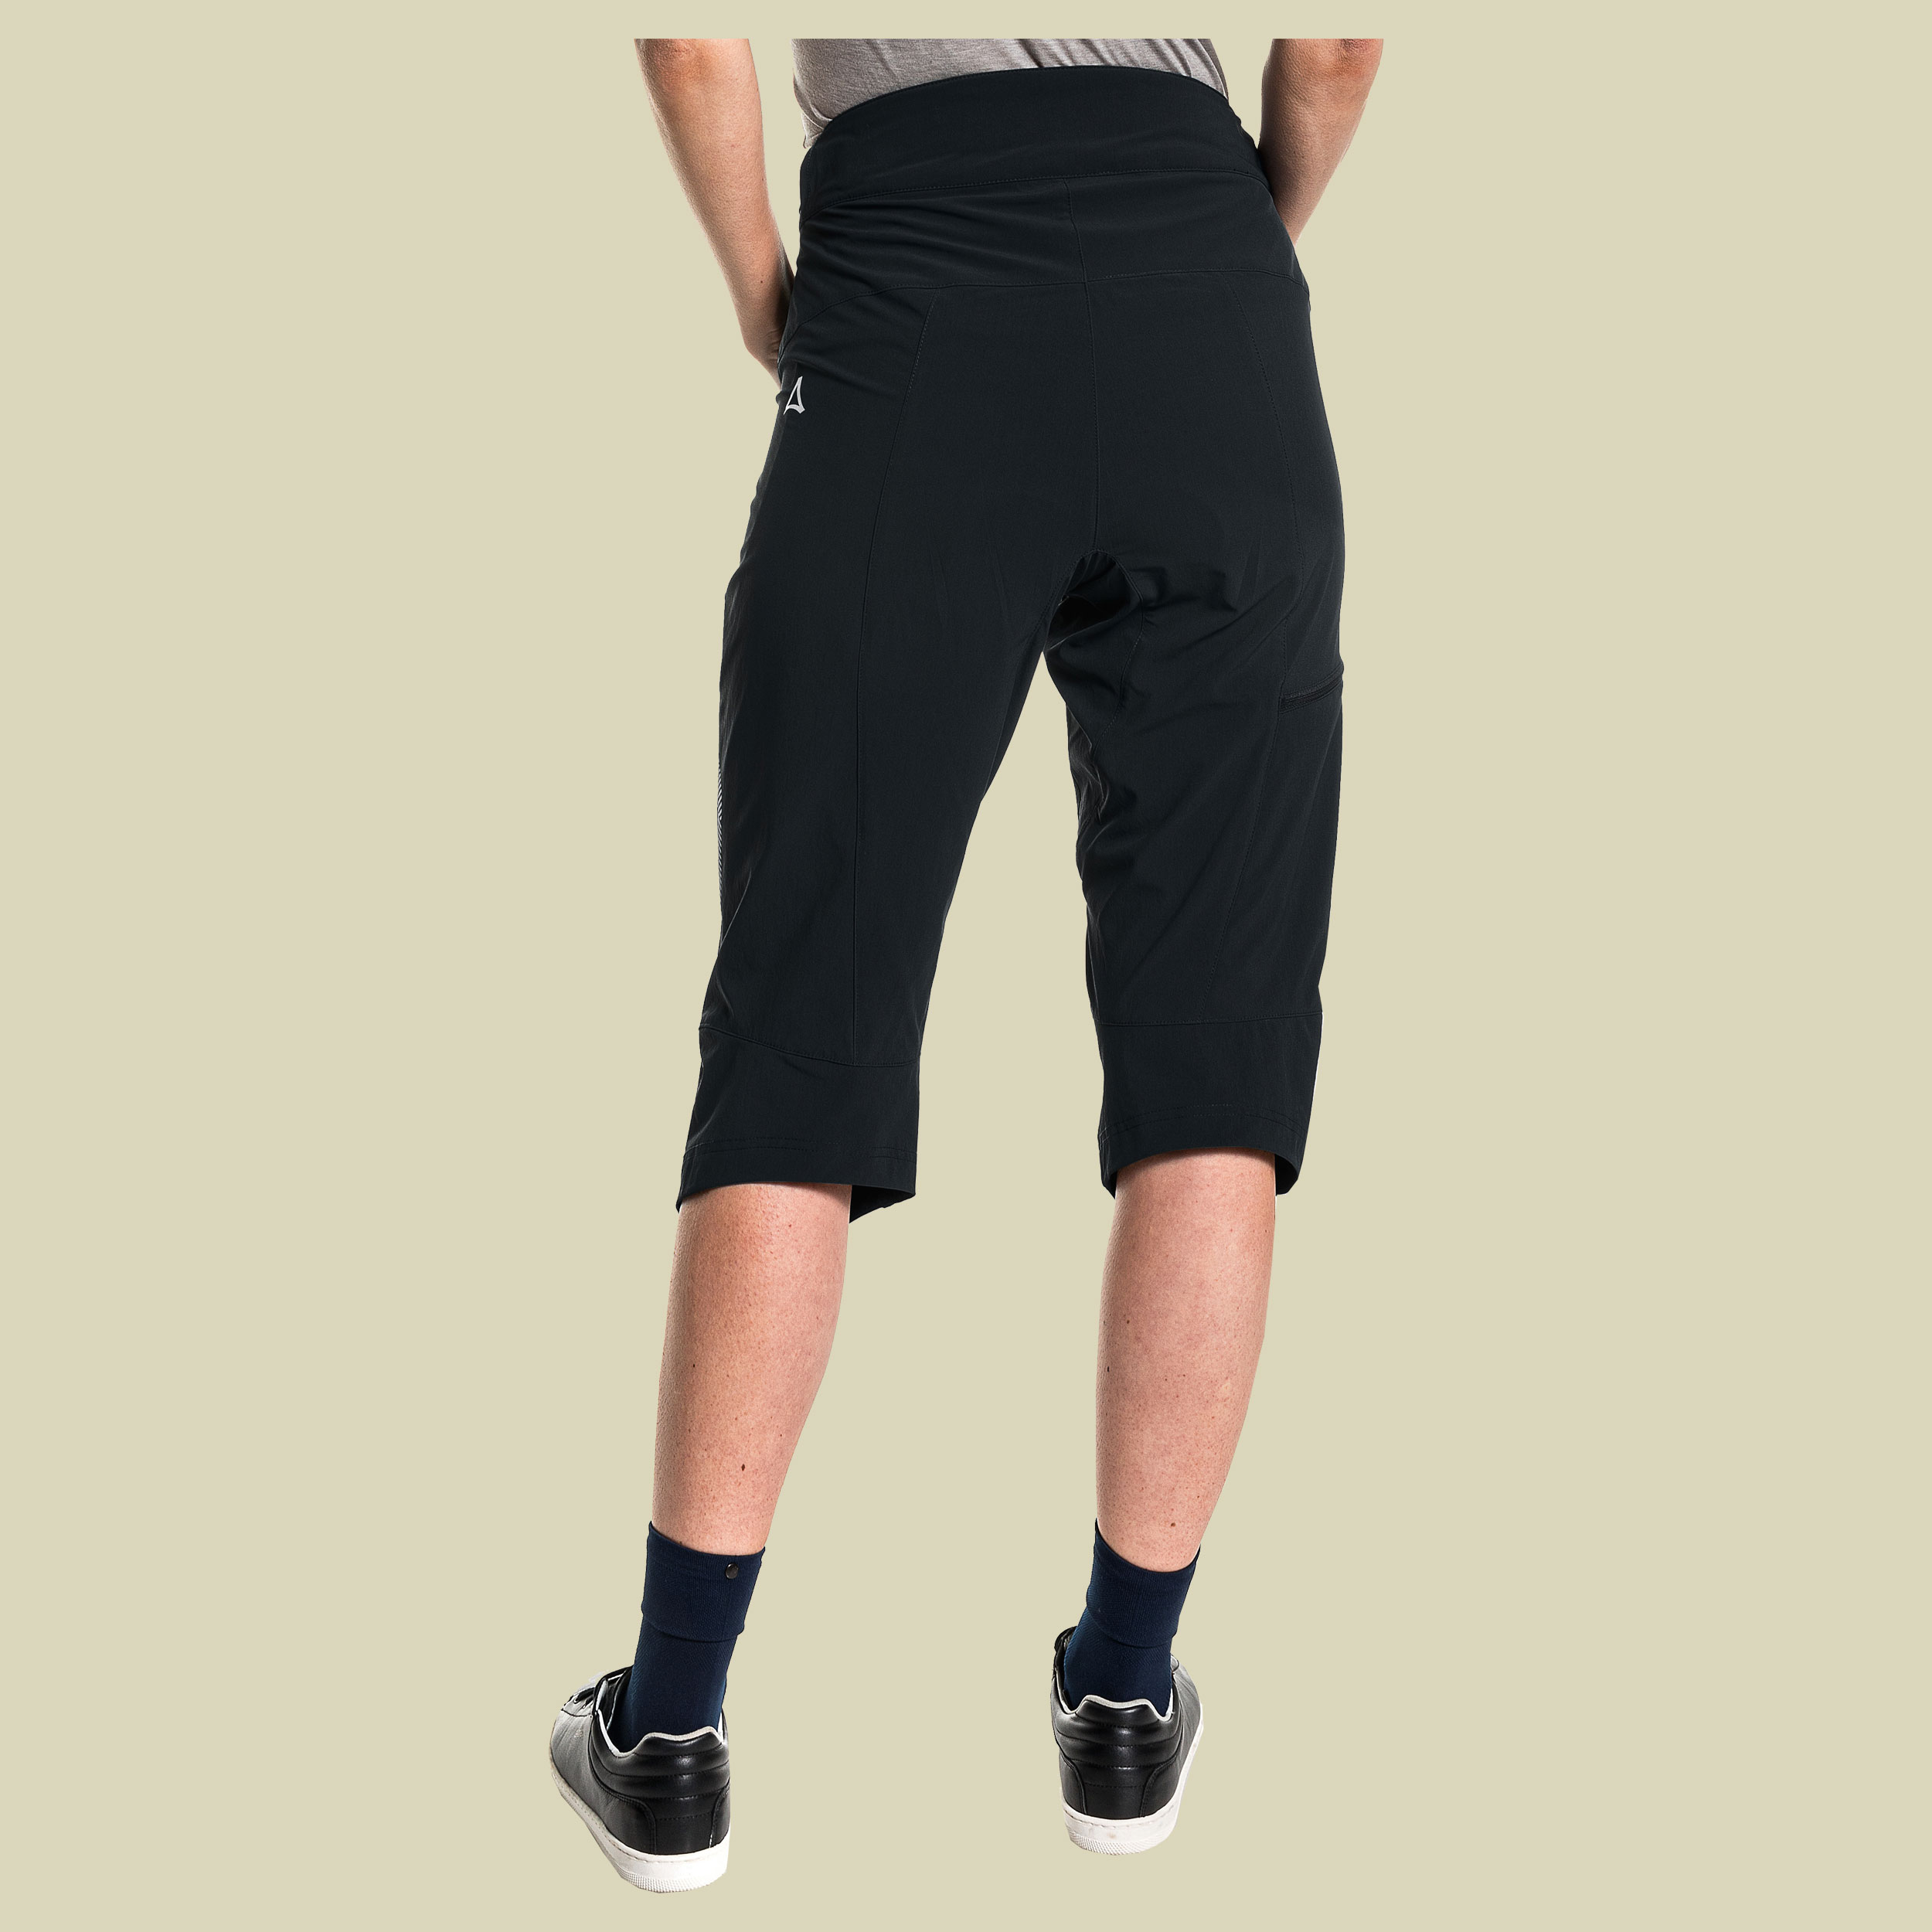 Moldavia Pants Women Größe 36 Farbe black